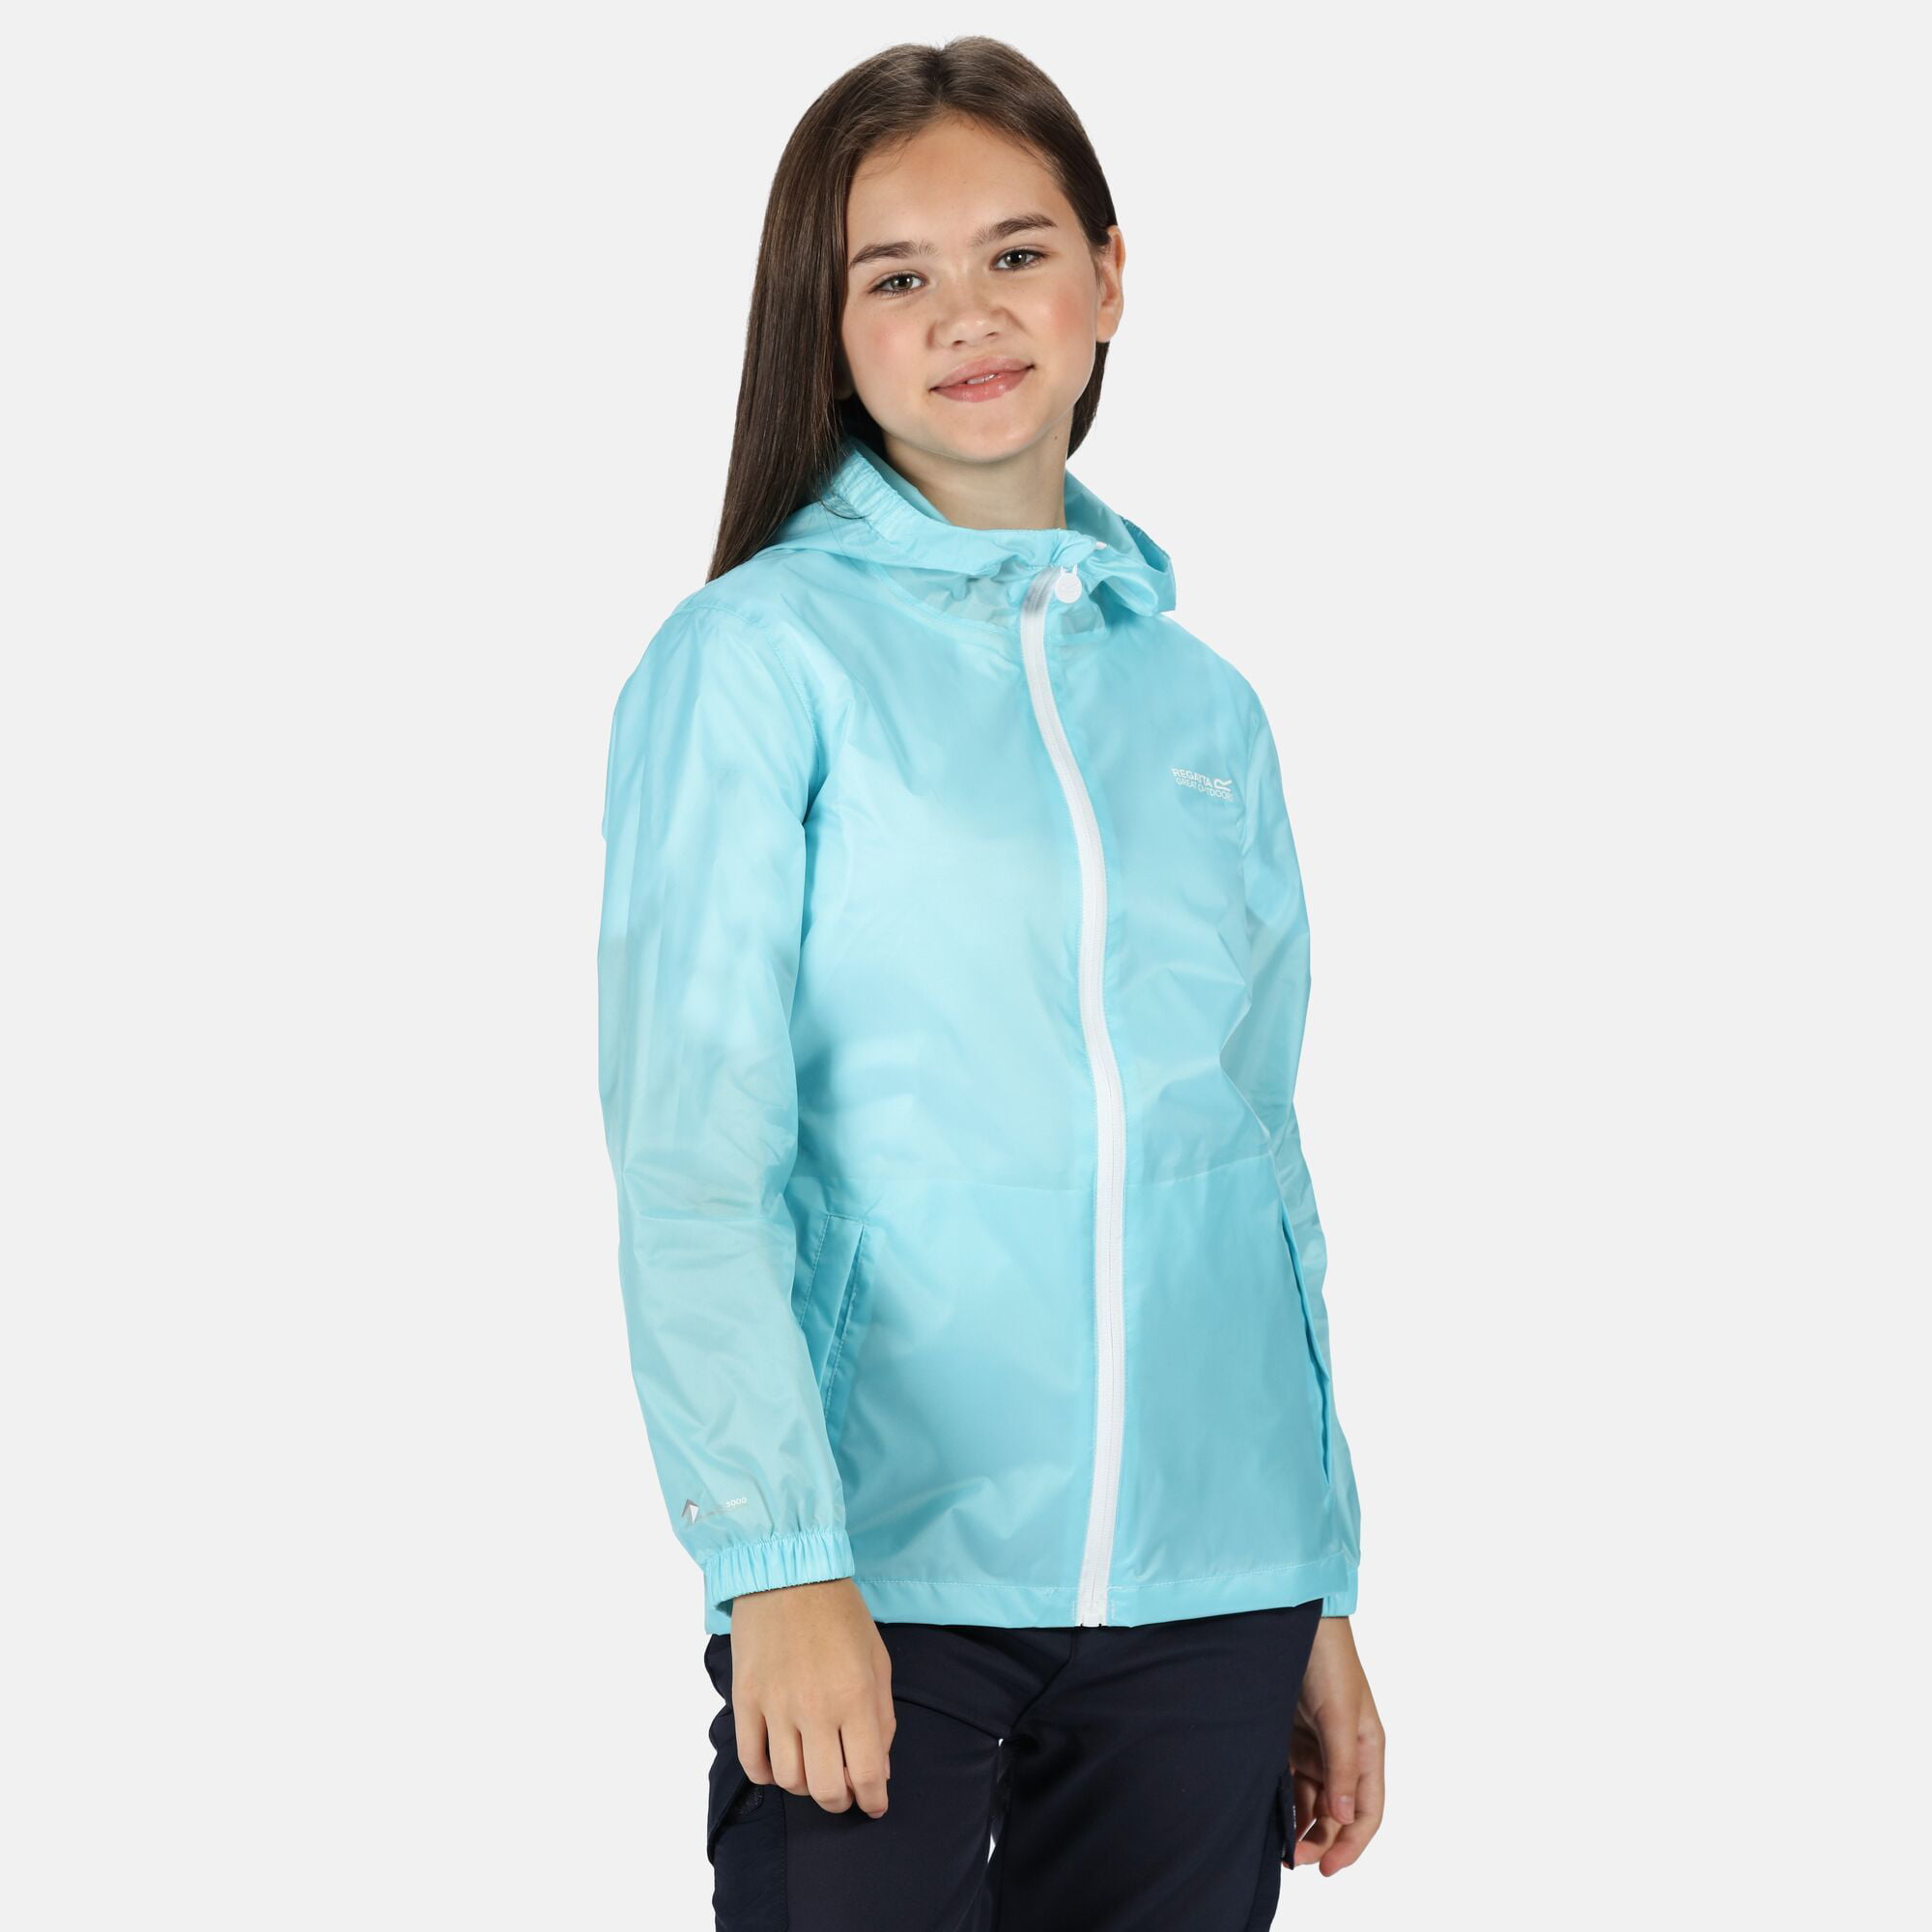 Regatta Kids Boys Girls Lightweight Packaway Waterproof Jacket Rain Coat RRP £25